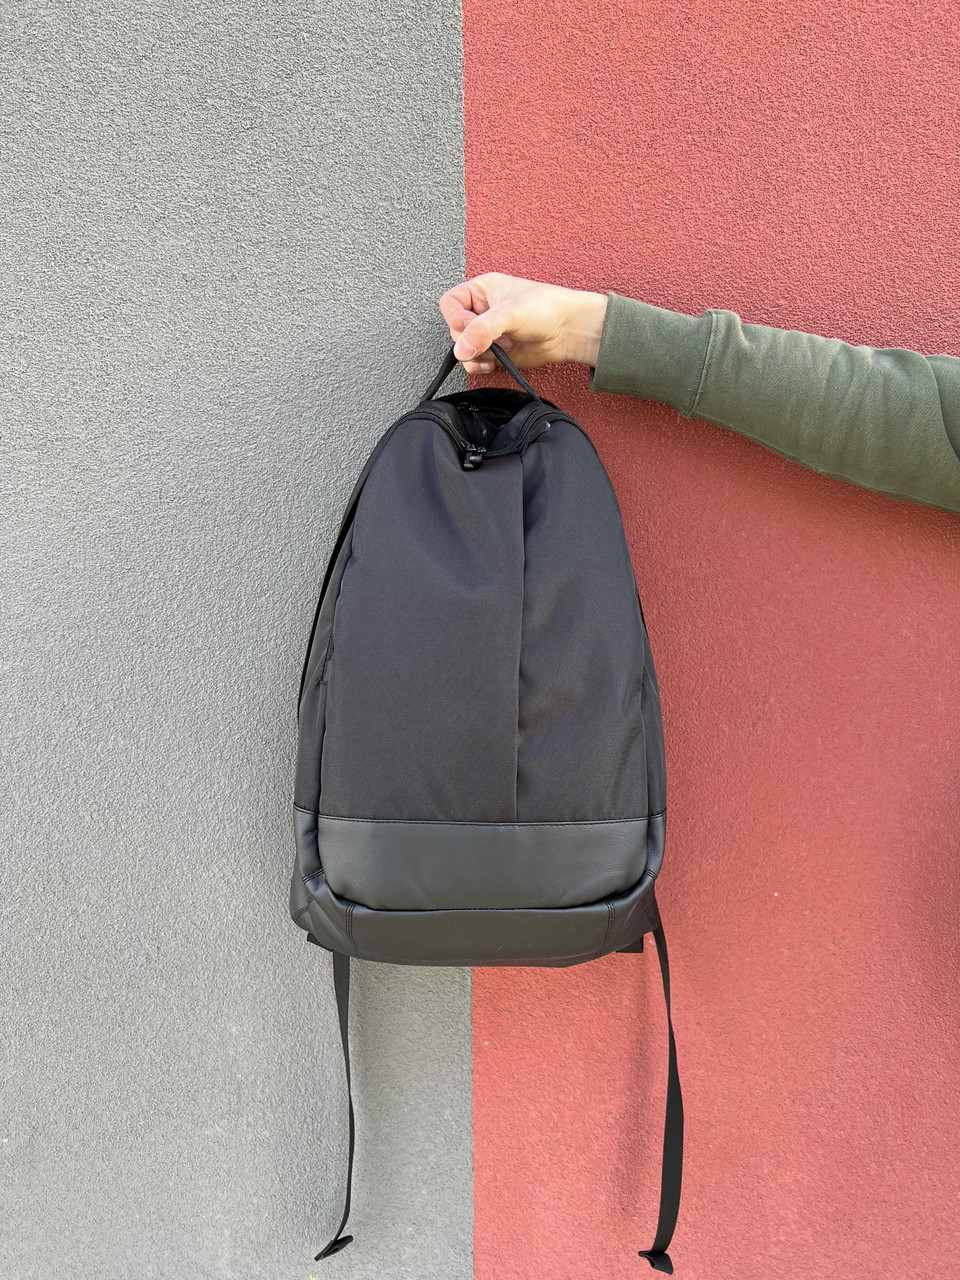 Класичний вмісткий рюкзак School з великою кількістю відділень в чорному кольорі, 30л